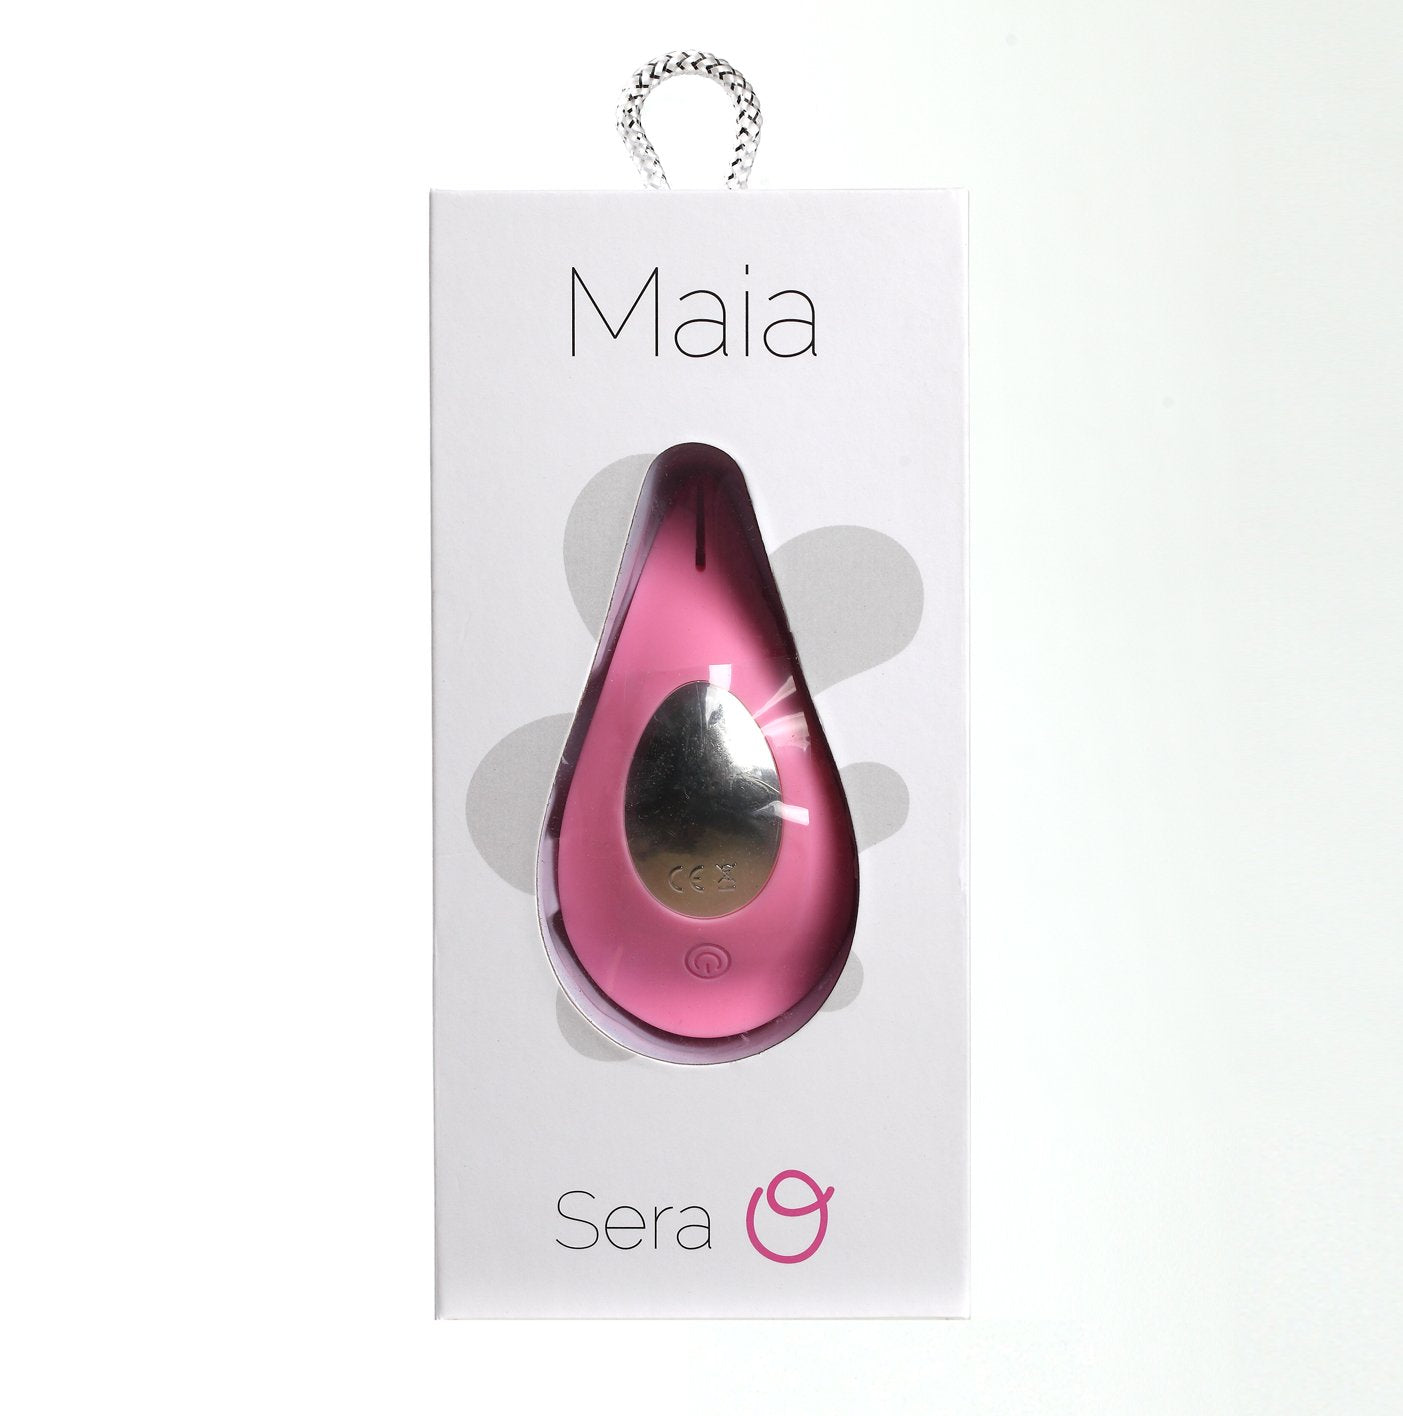 Maia Sera-(ma17-002-p3)